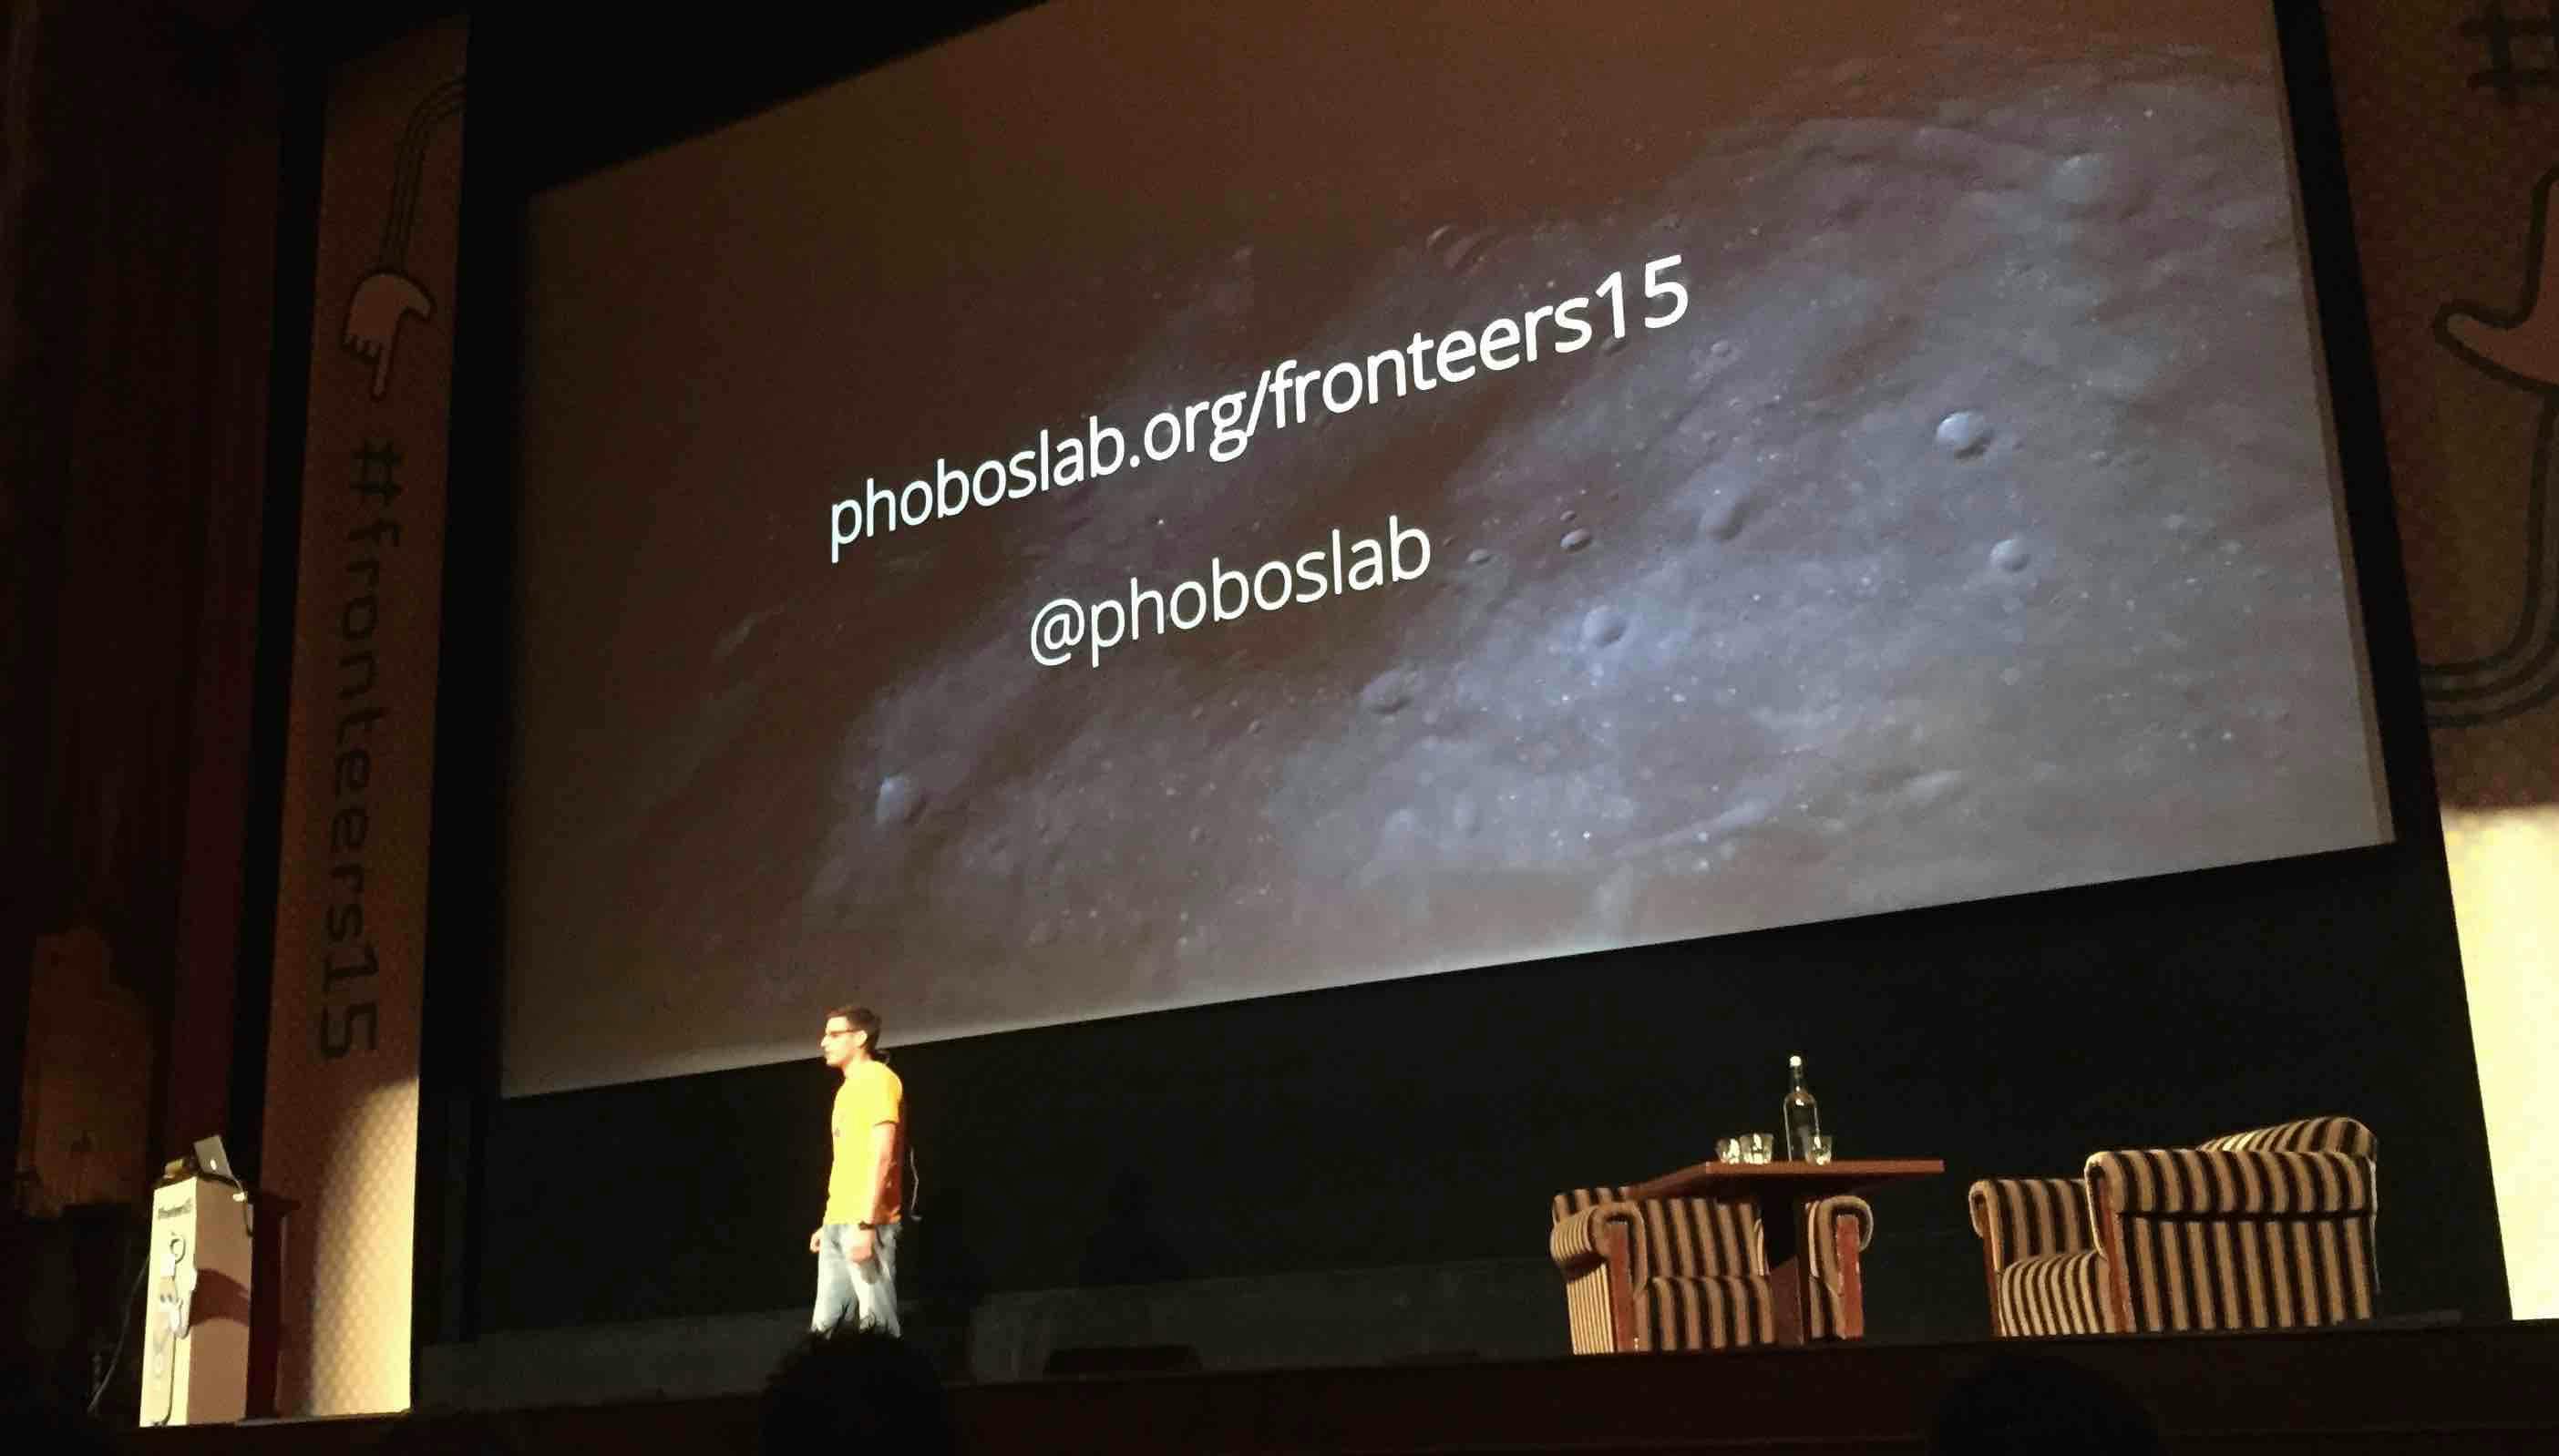 Phoboslab presenting in Fronteers 2015